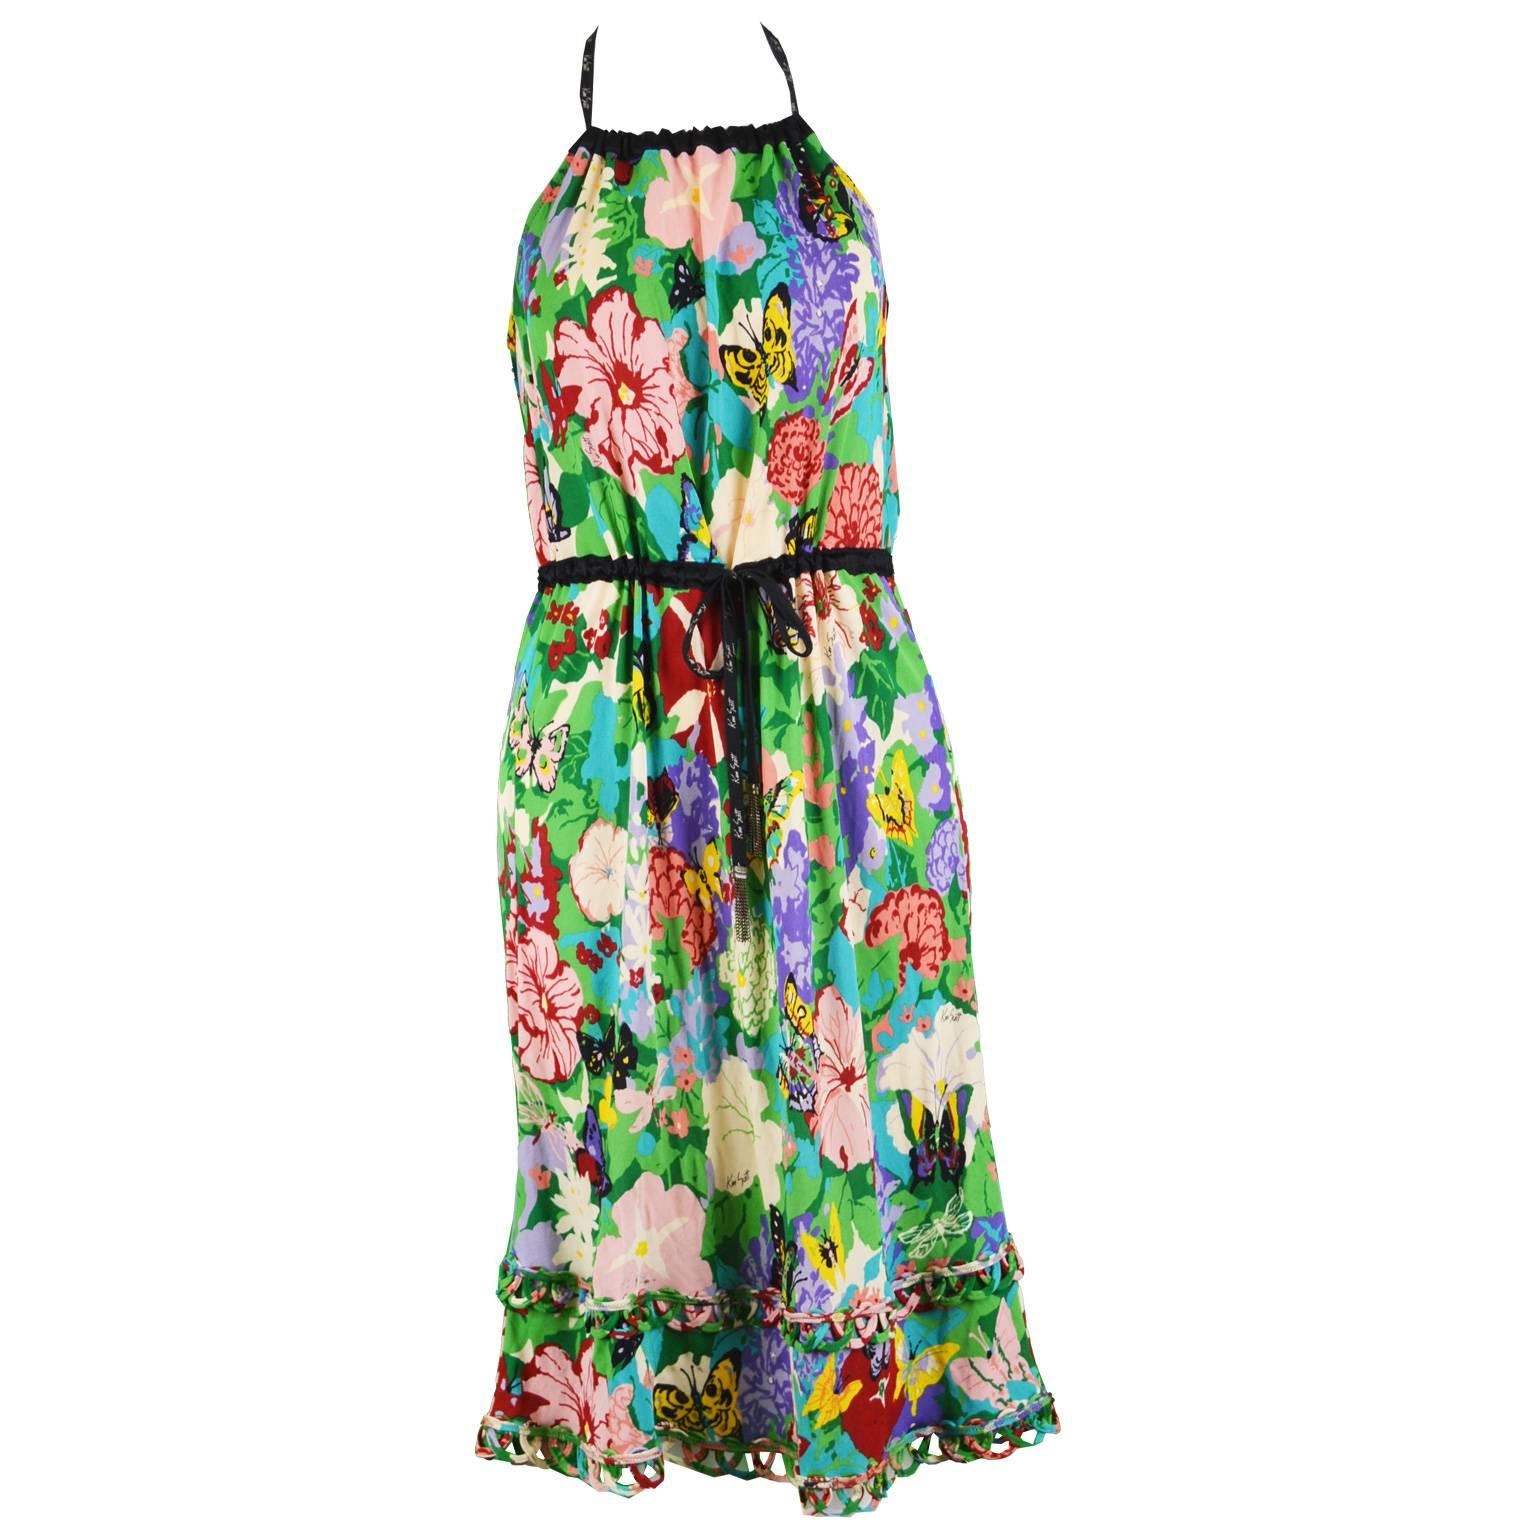 Ken Scott Brightly Printed Tropical Backless Halterneck Jersey Dress For Sale